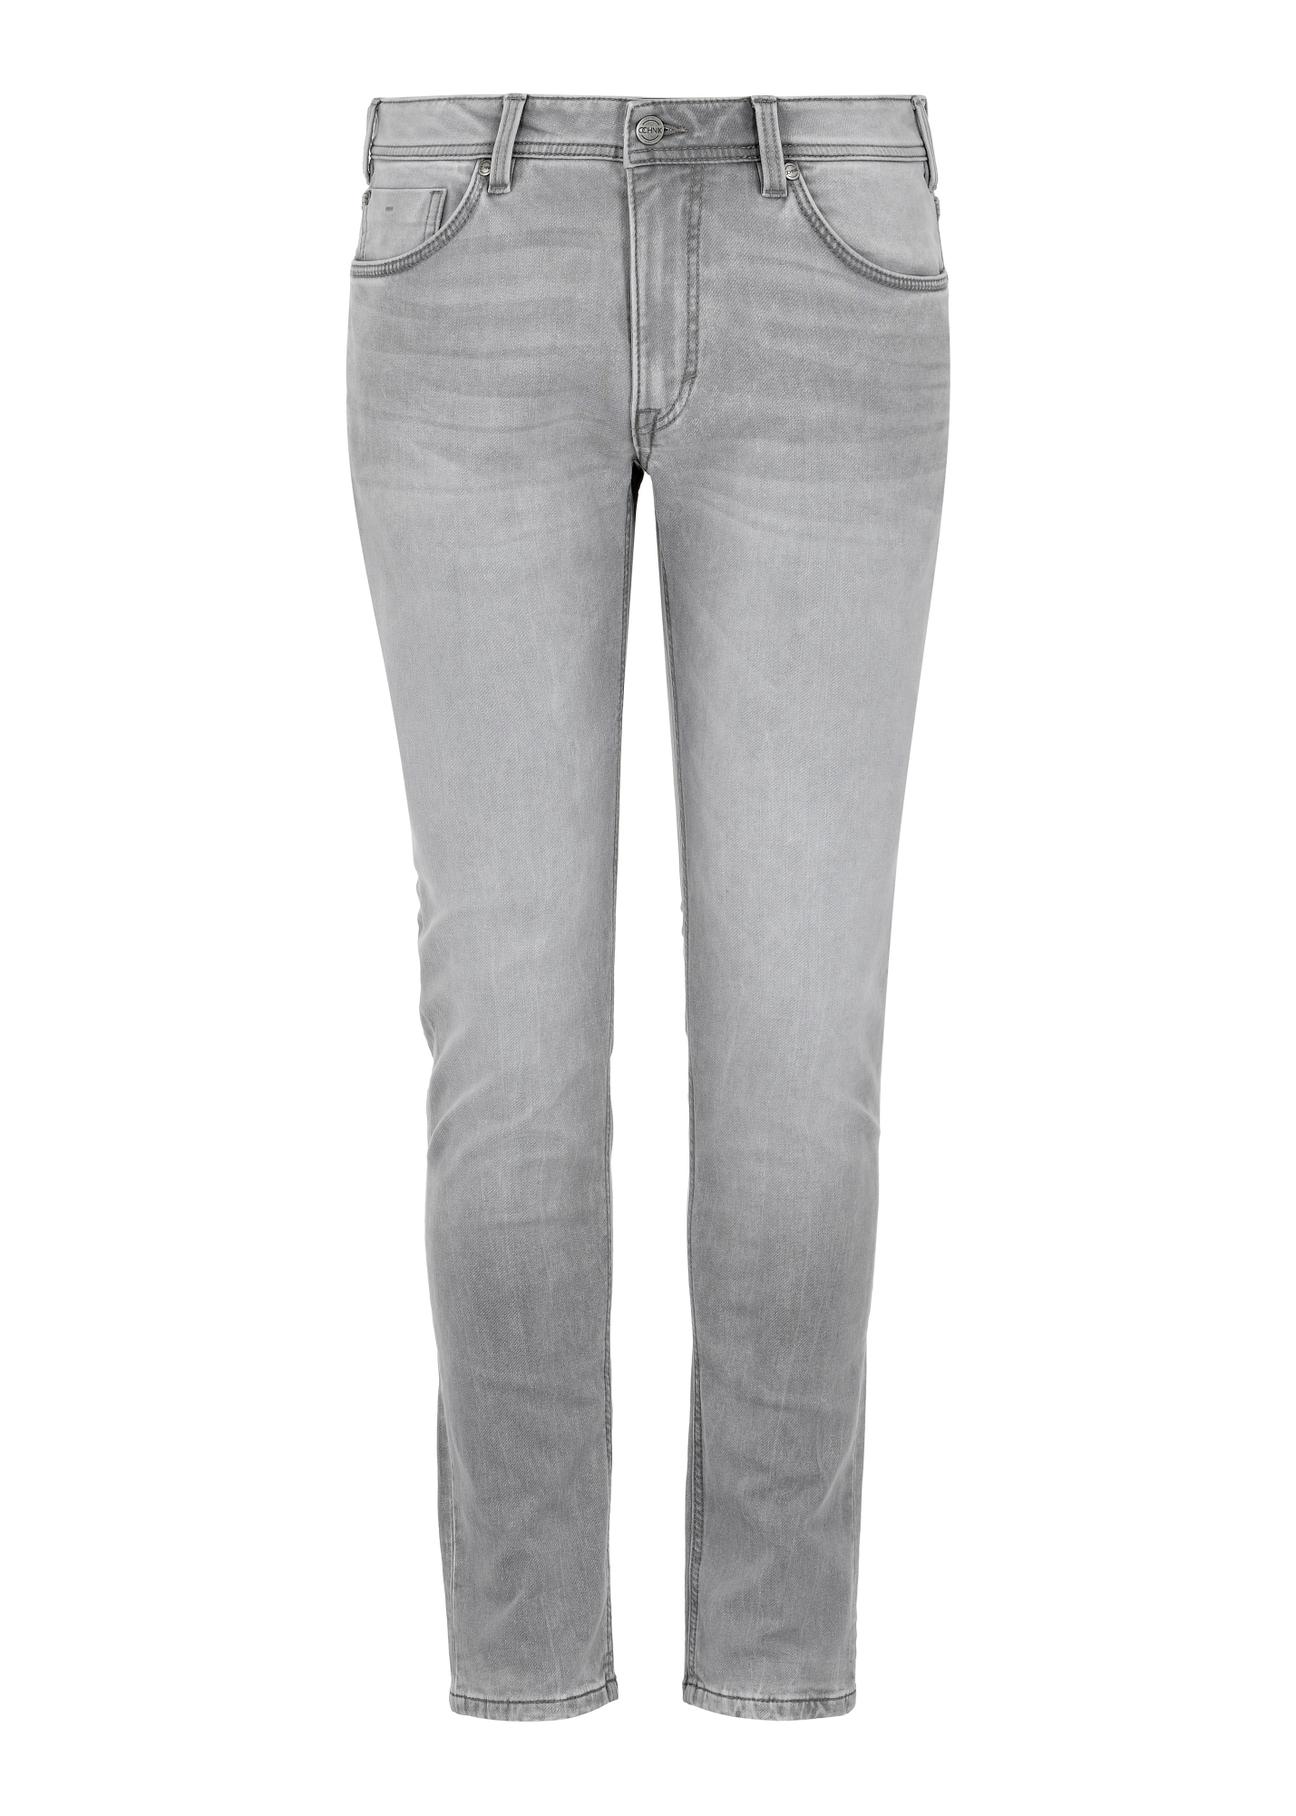 Szare spodnie jeansowe męskie JEAMT-0021-91(W24)